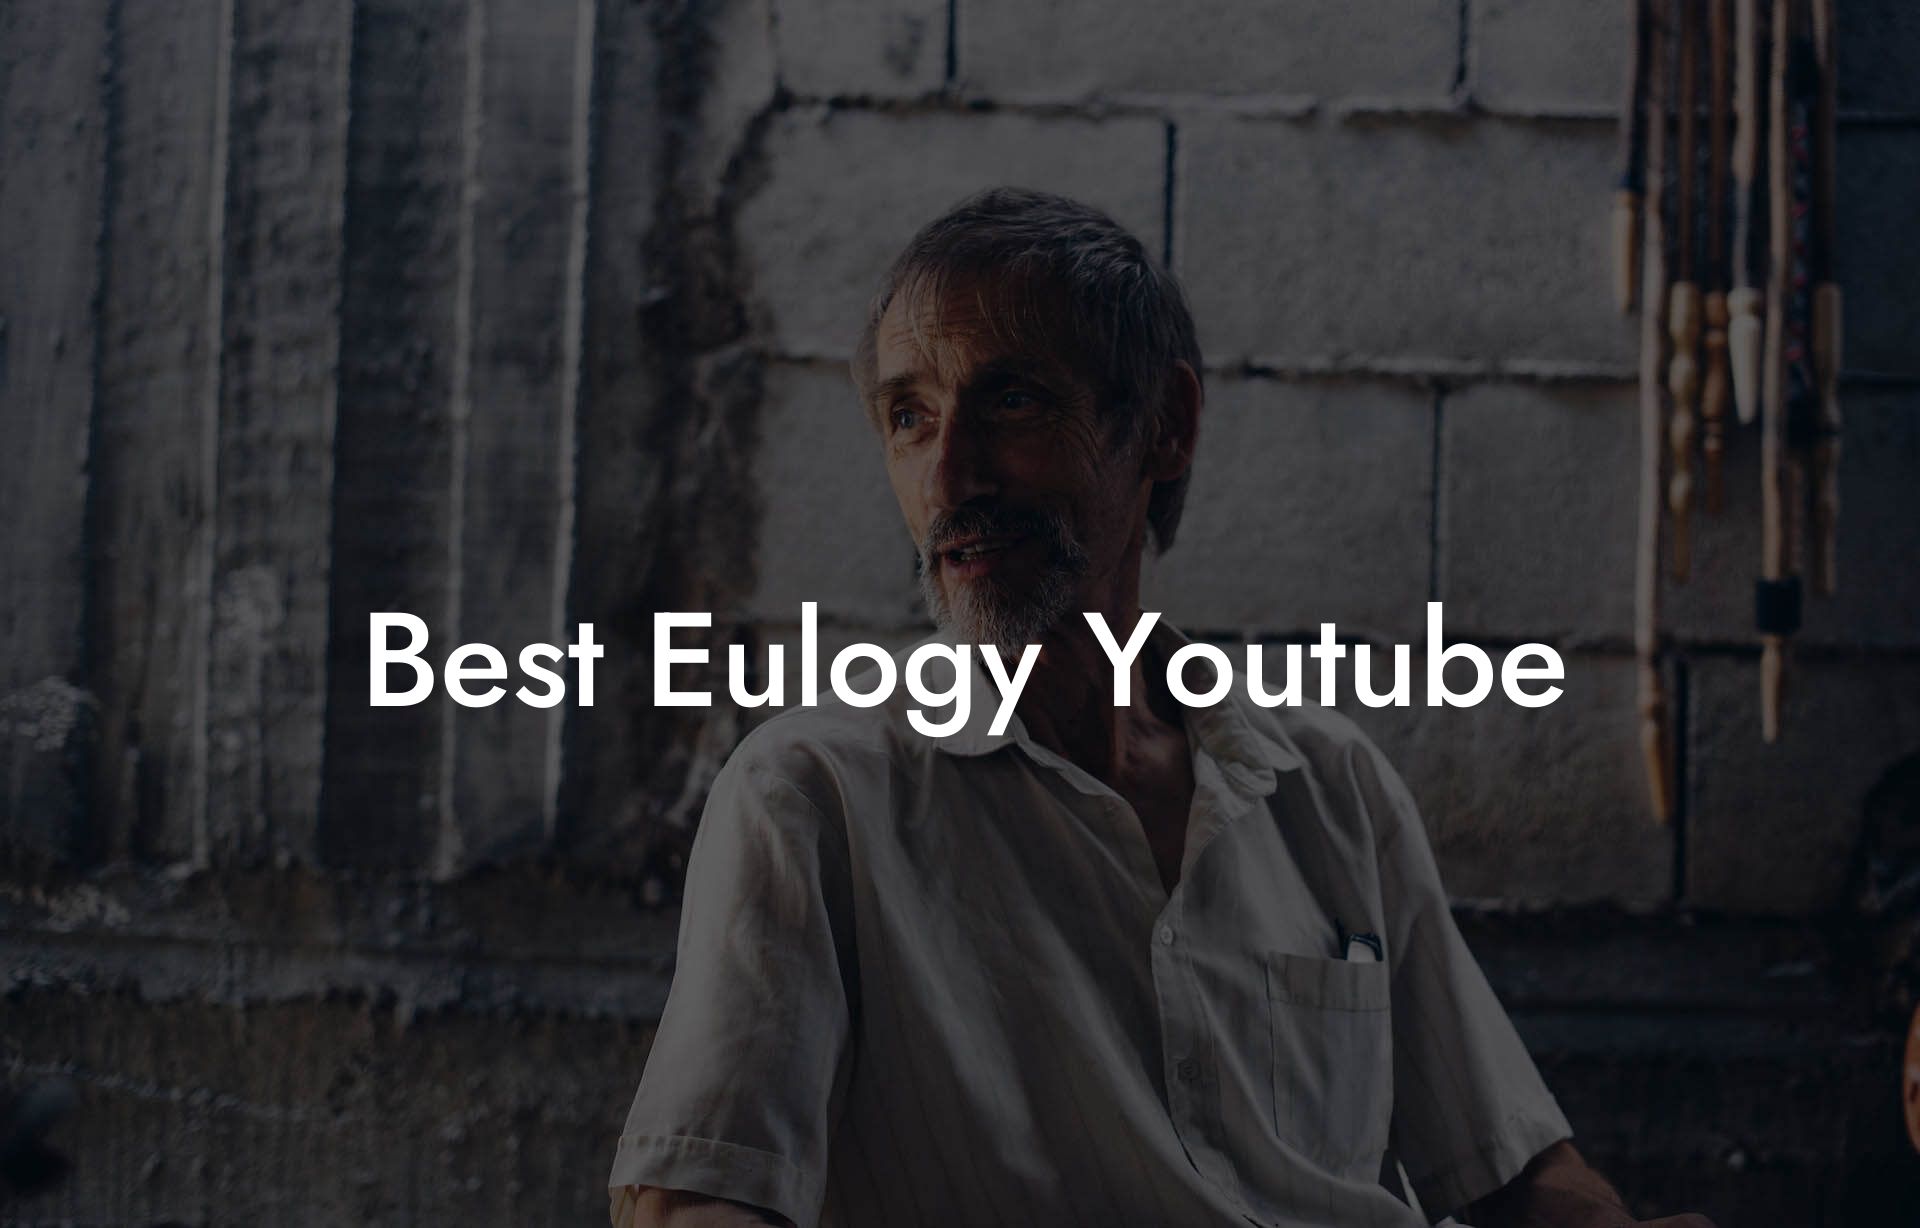 Best Eulogy Youtube